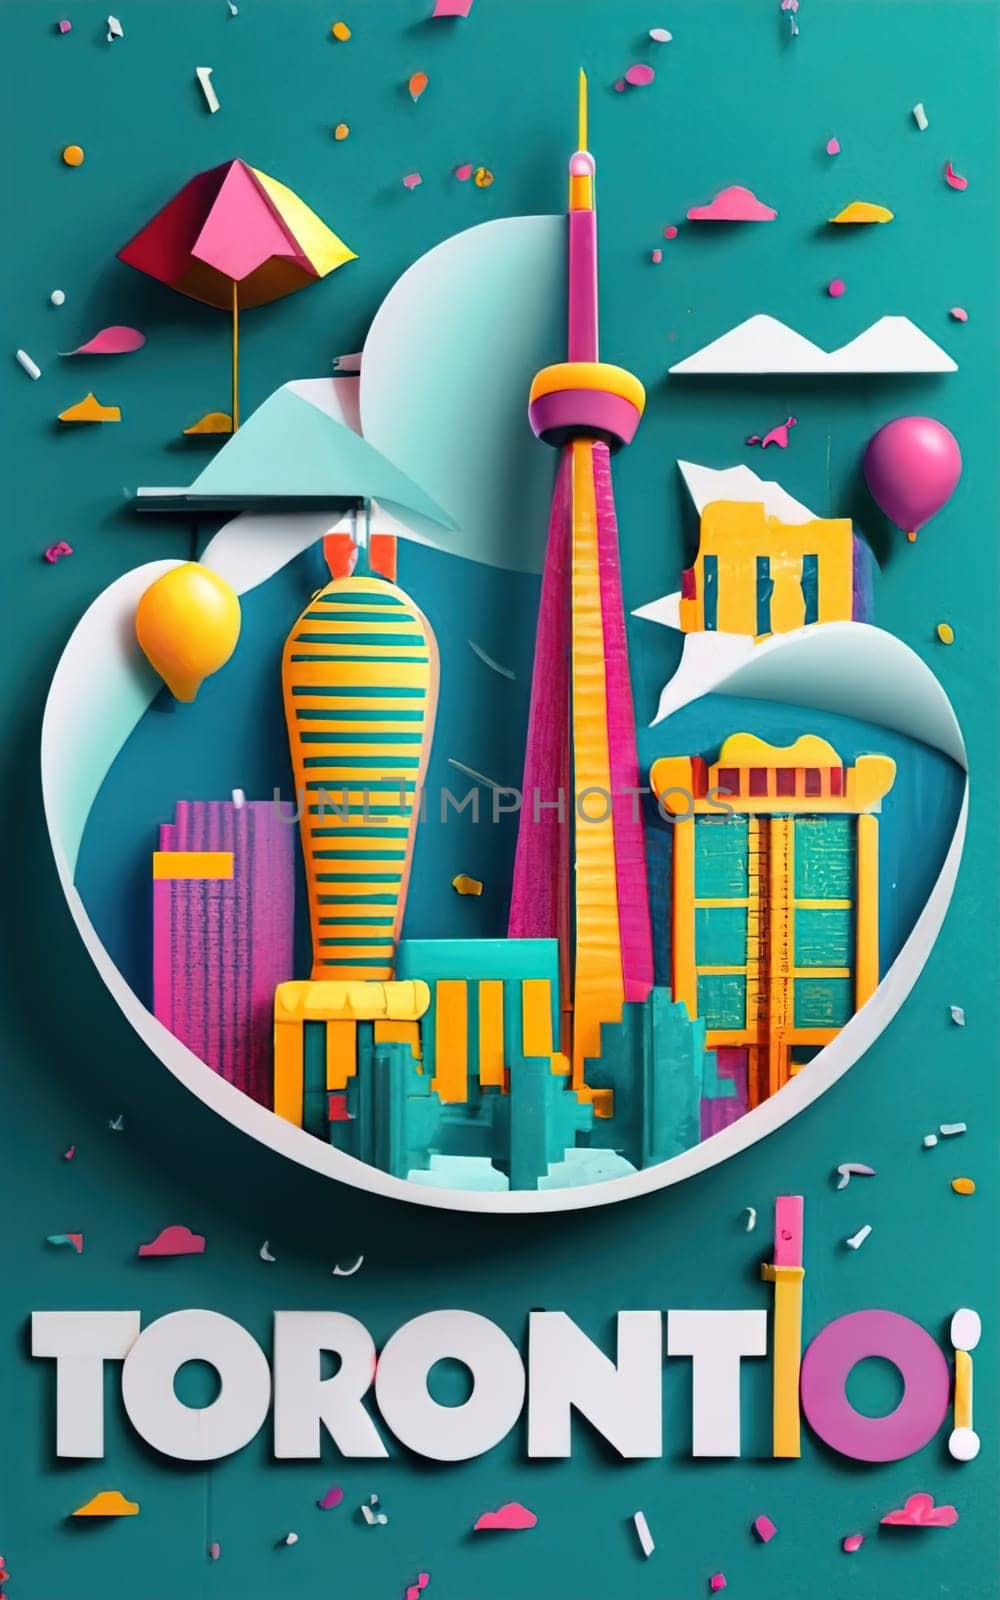 Toronto Paper Artwork - Creative Papercraft Representation of the City by igor010